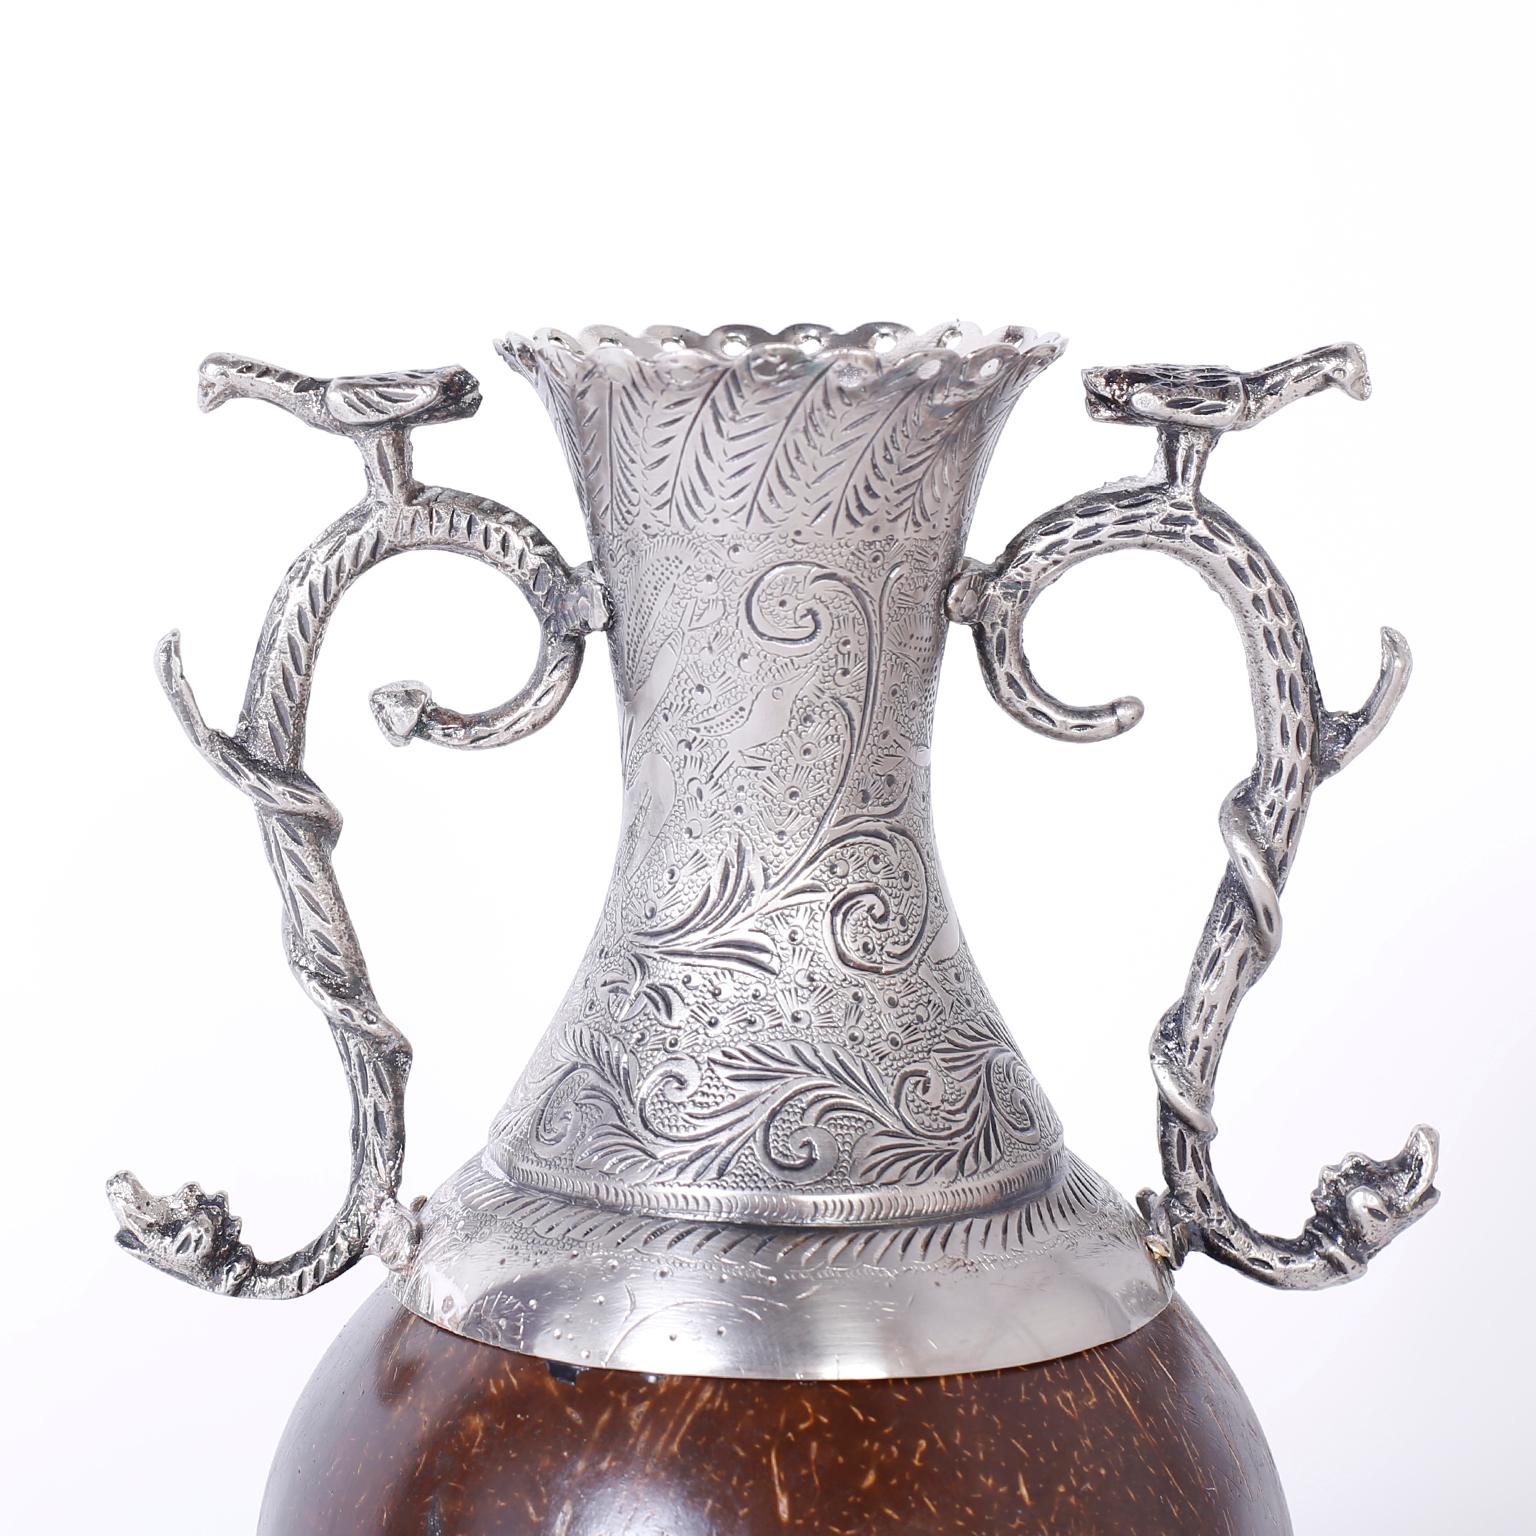 Vase antique de style colonial espagnol avec une combinaison inhabituelle de matériaux. Le vase est en métal argenté avec des gravures florales et des poignées gracieuses représentant des oiseaux sur des serpents. Le centre, à la manière